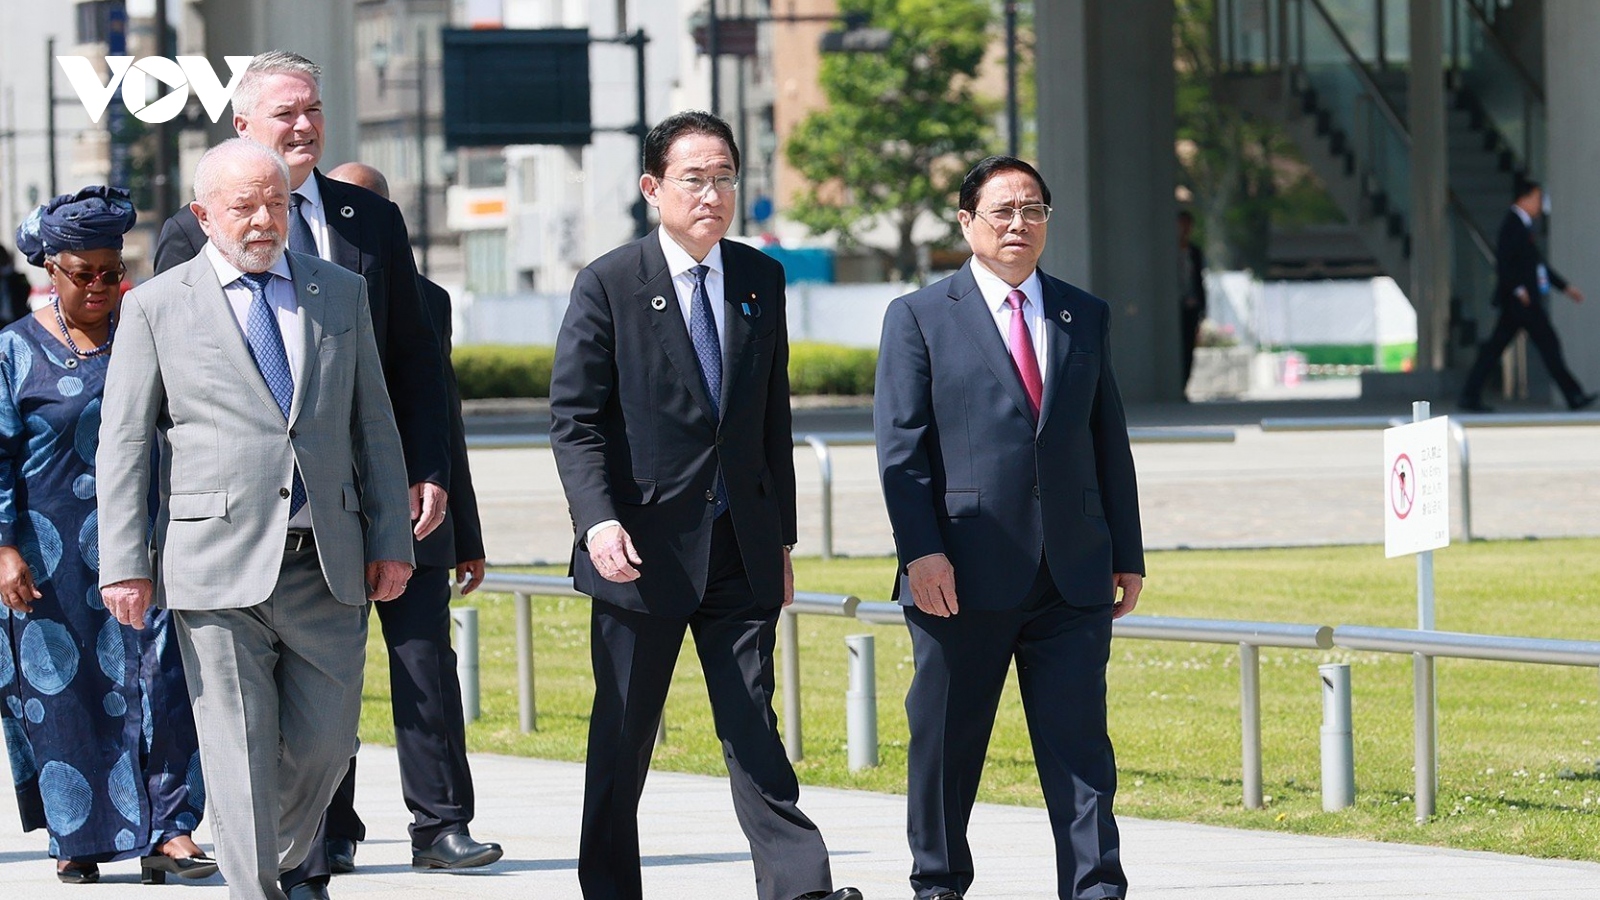 Hội nghị G7 mở rộng để lại dấu ấn sâu đậm về vai trò và uy tín quốc tế của Việt Nam